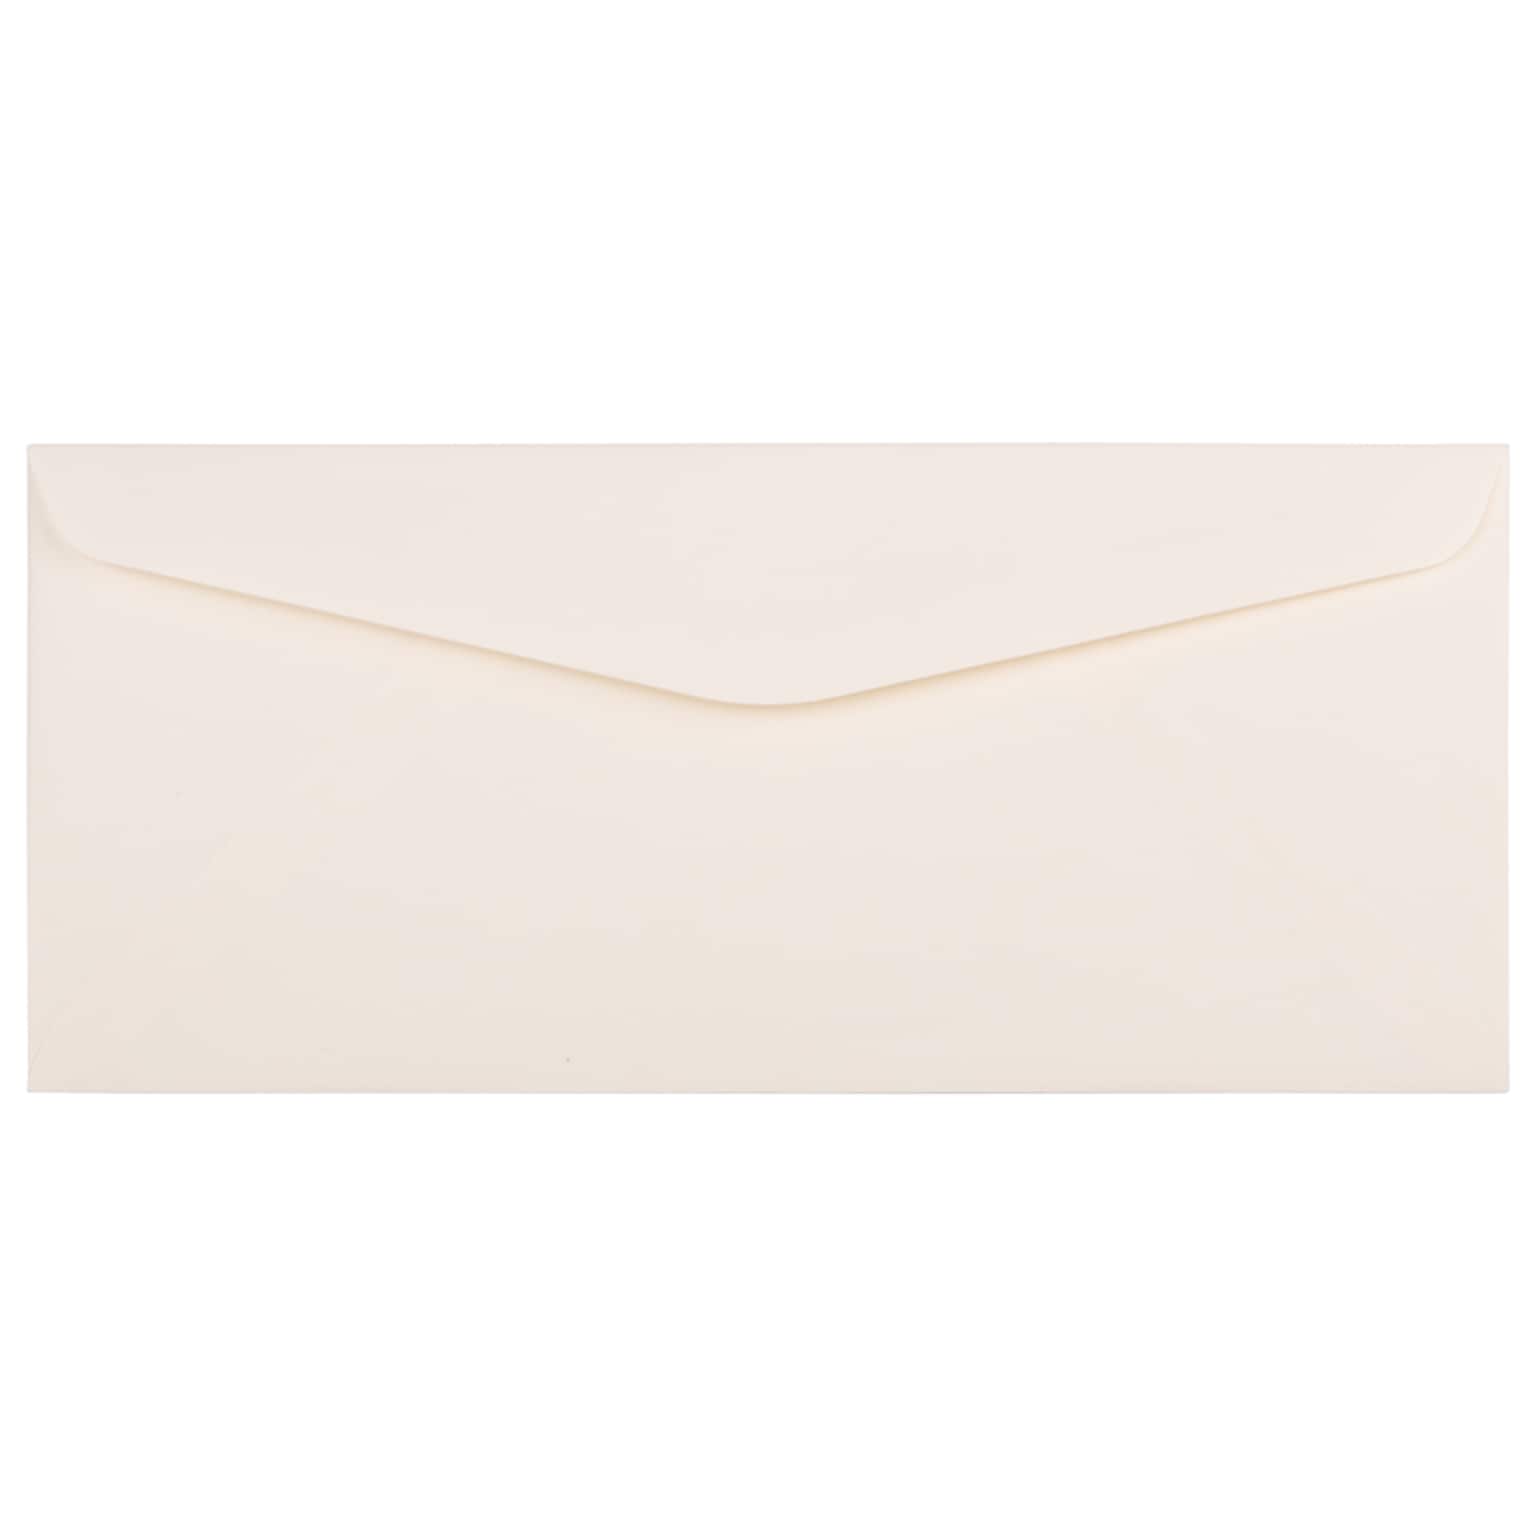 JAM Paper Strathmore #10 Business Envelope, 4 1/8 x 9 1/2, Natural White, 50/Pack (191170I)